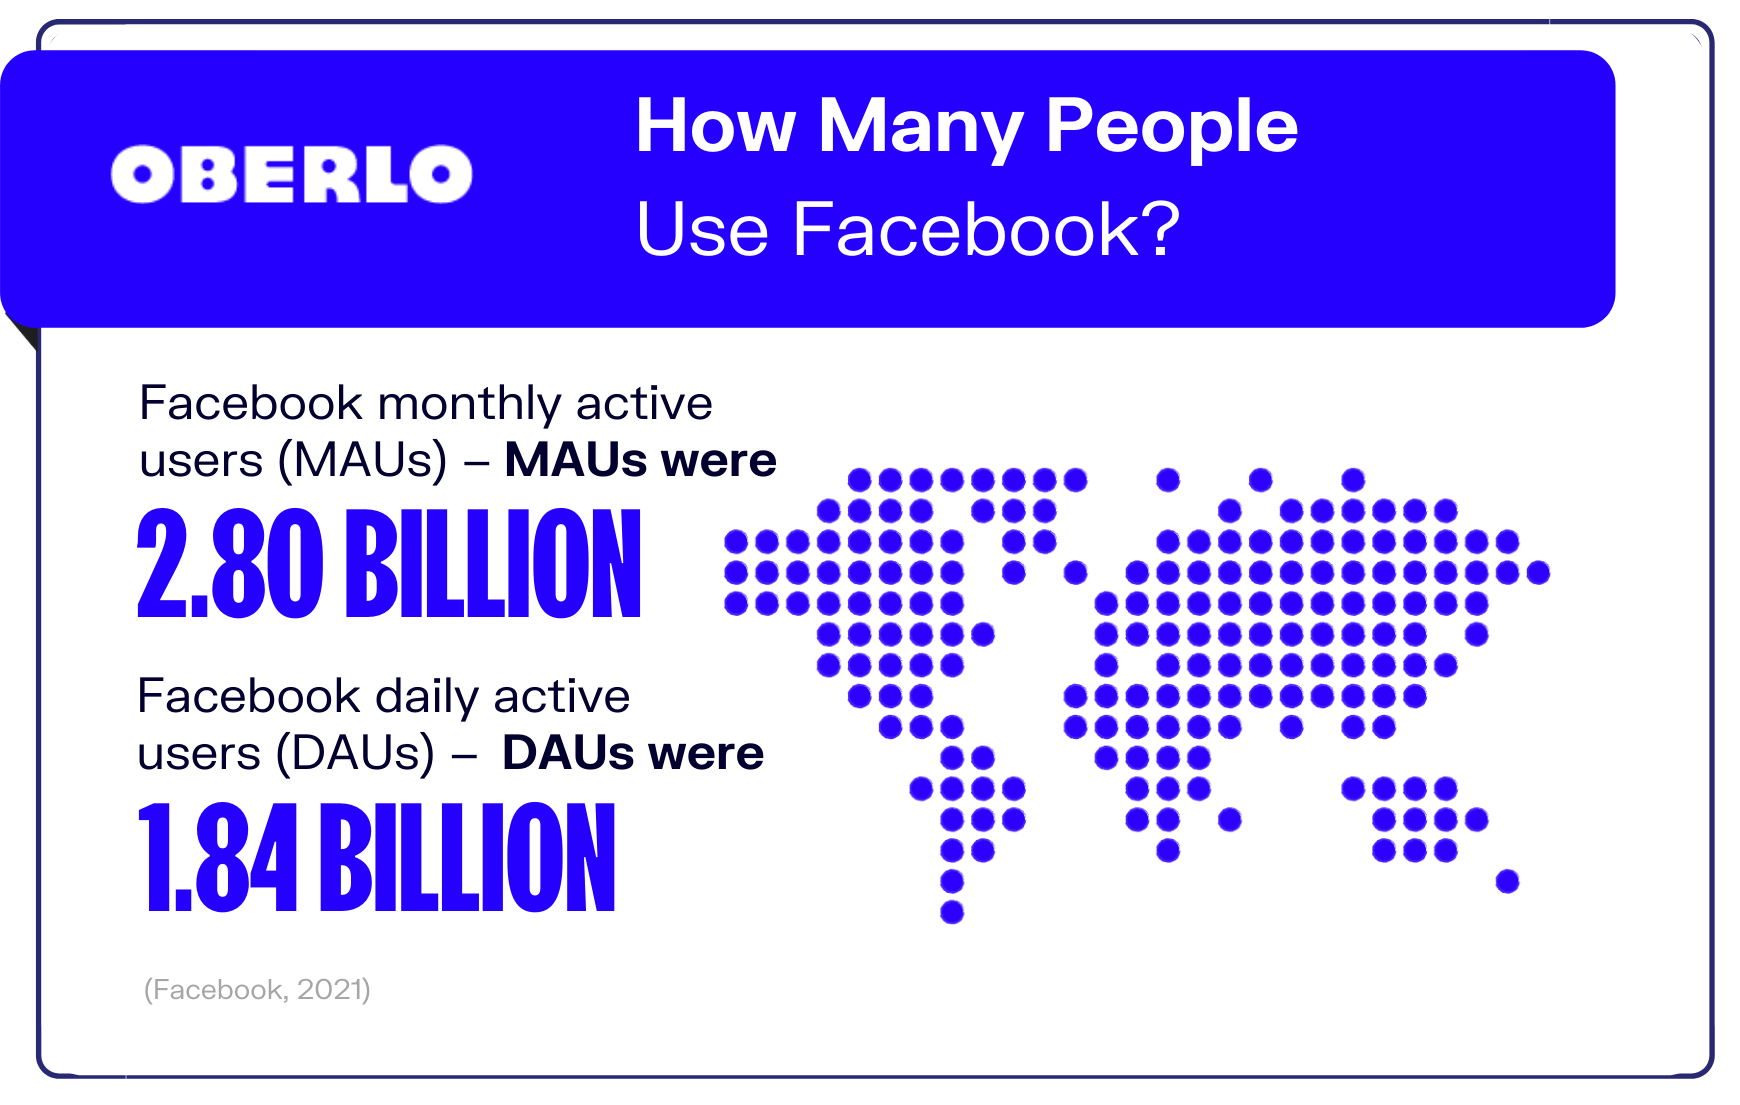 有多少人使用Facebook图形